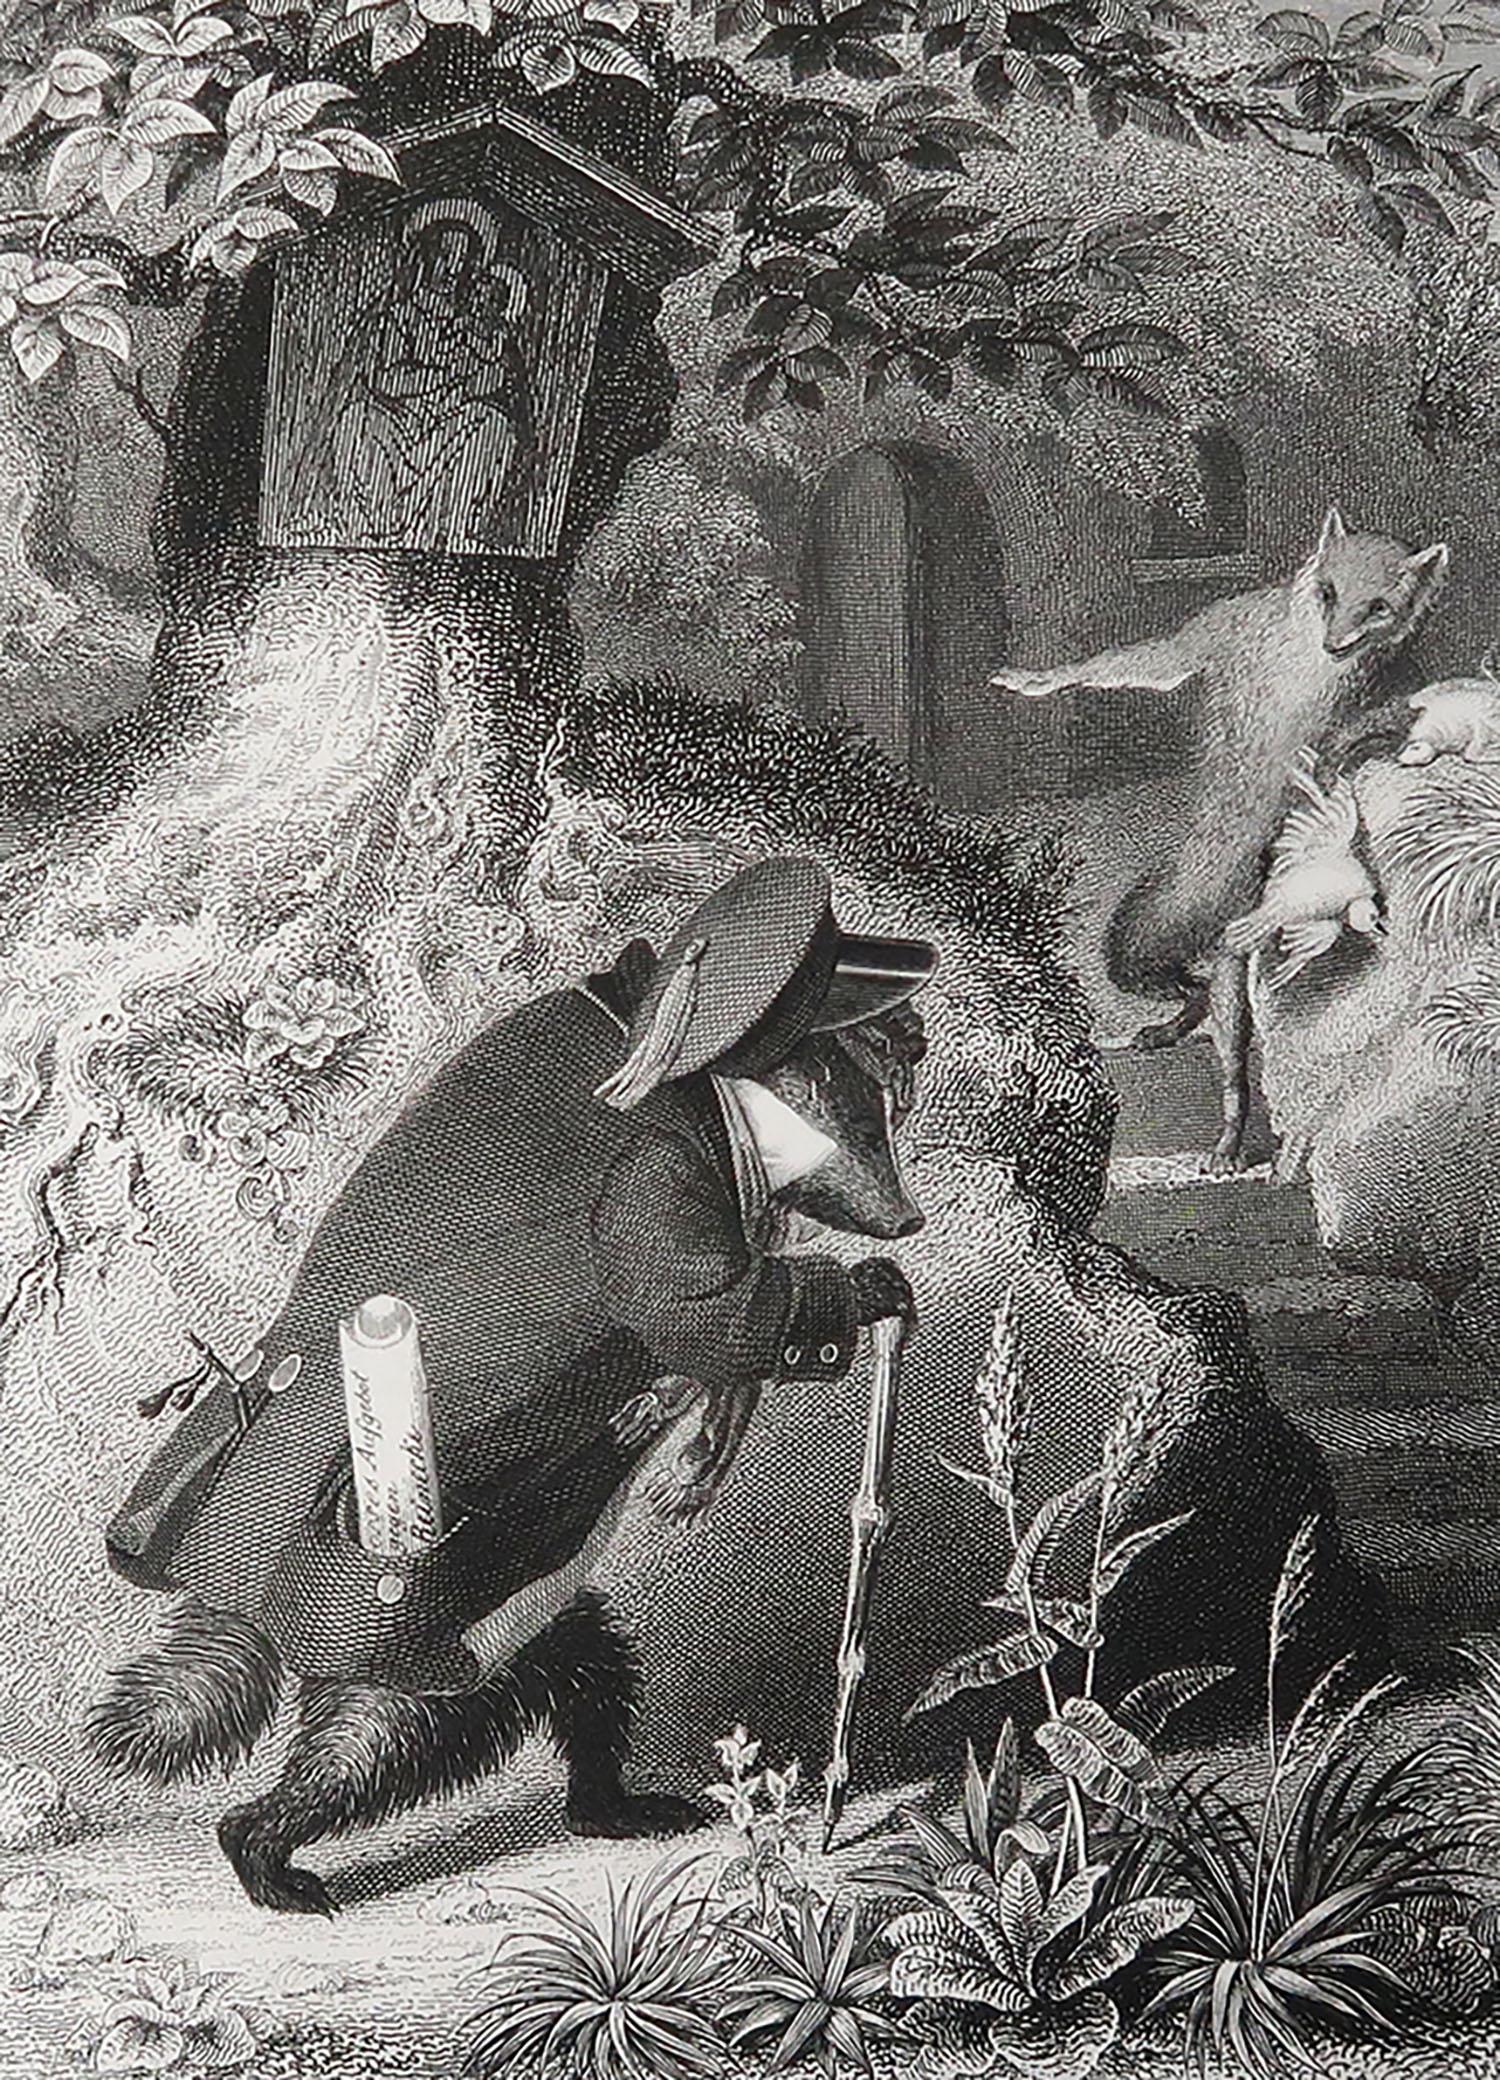 Superbe image de Heinrich Leutemann.

De la série Reynard le Renard.

Gravure sur acier fin.

Publié par A.H. Payne C.1850

Non encadré.

